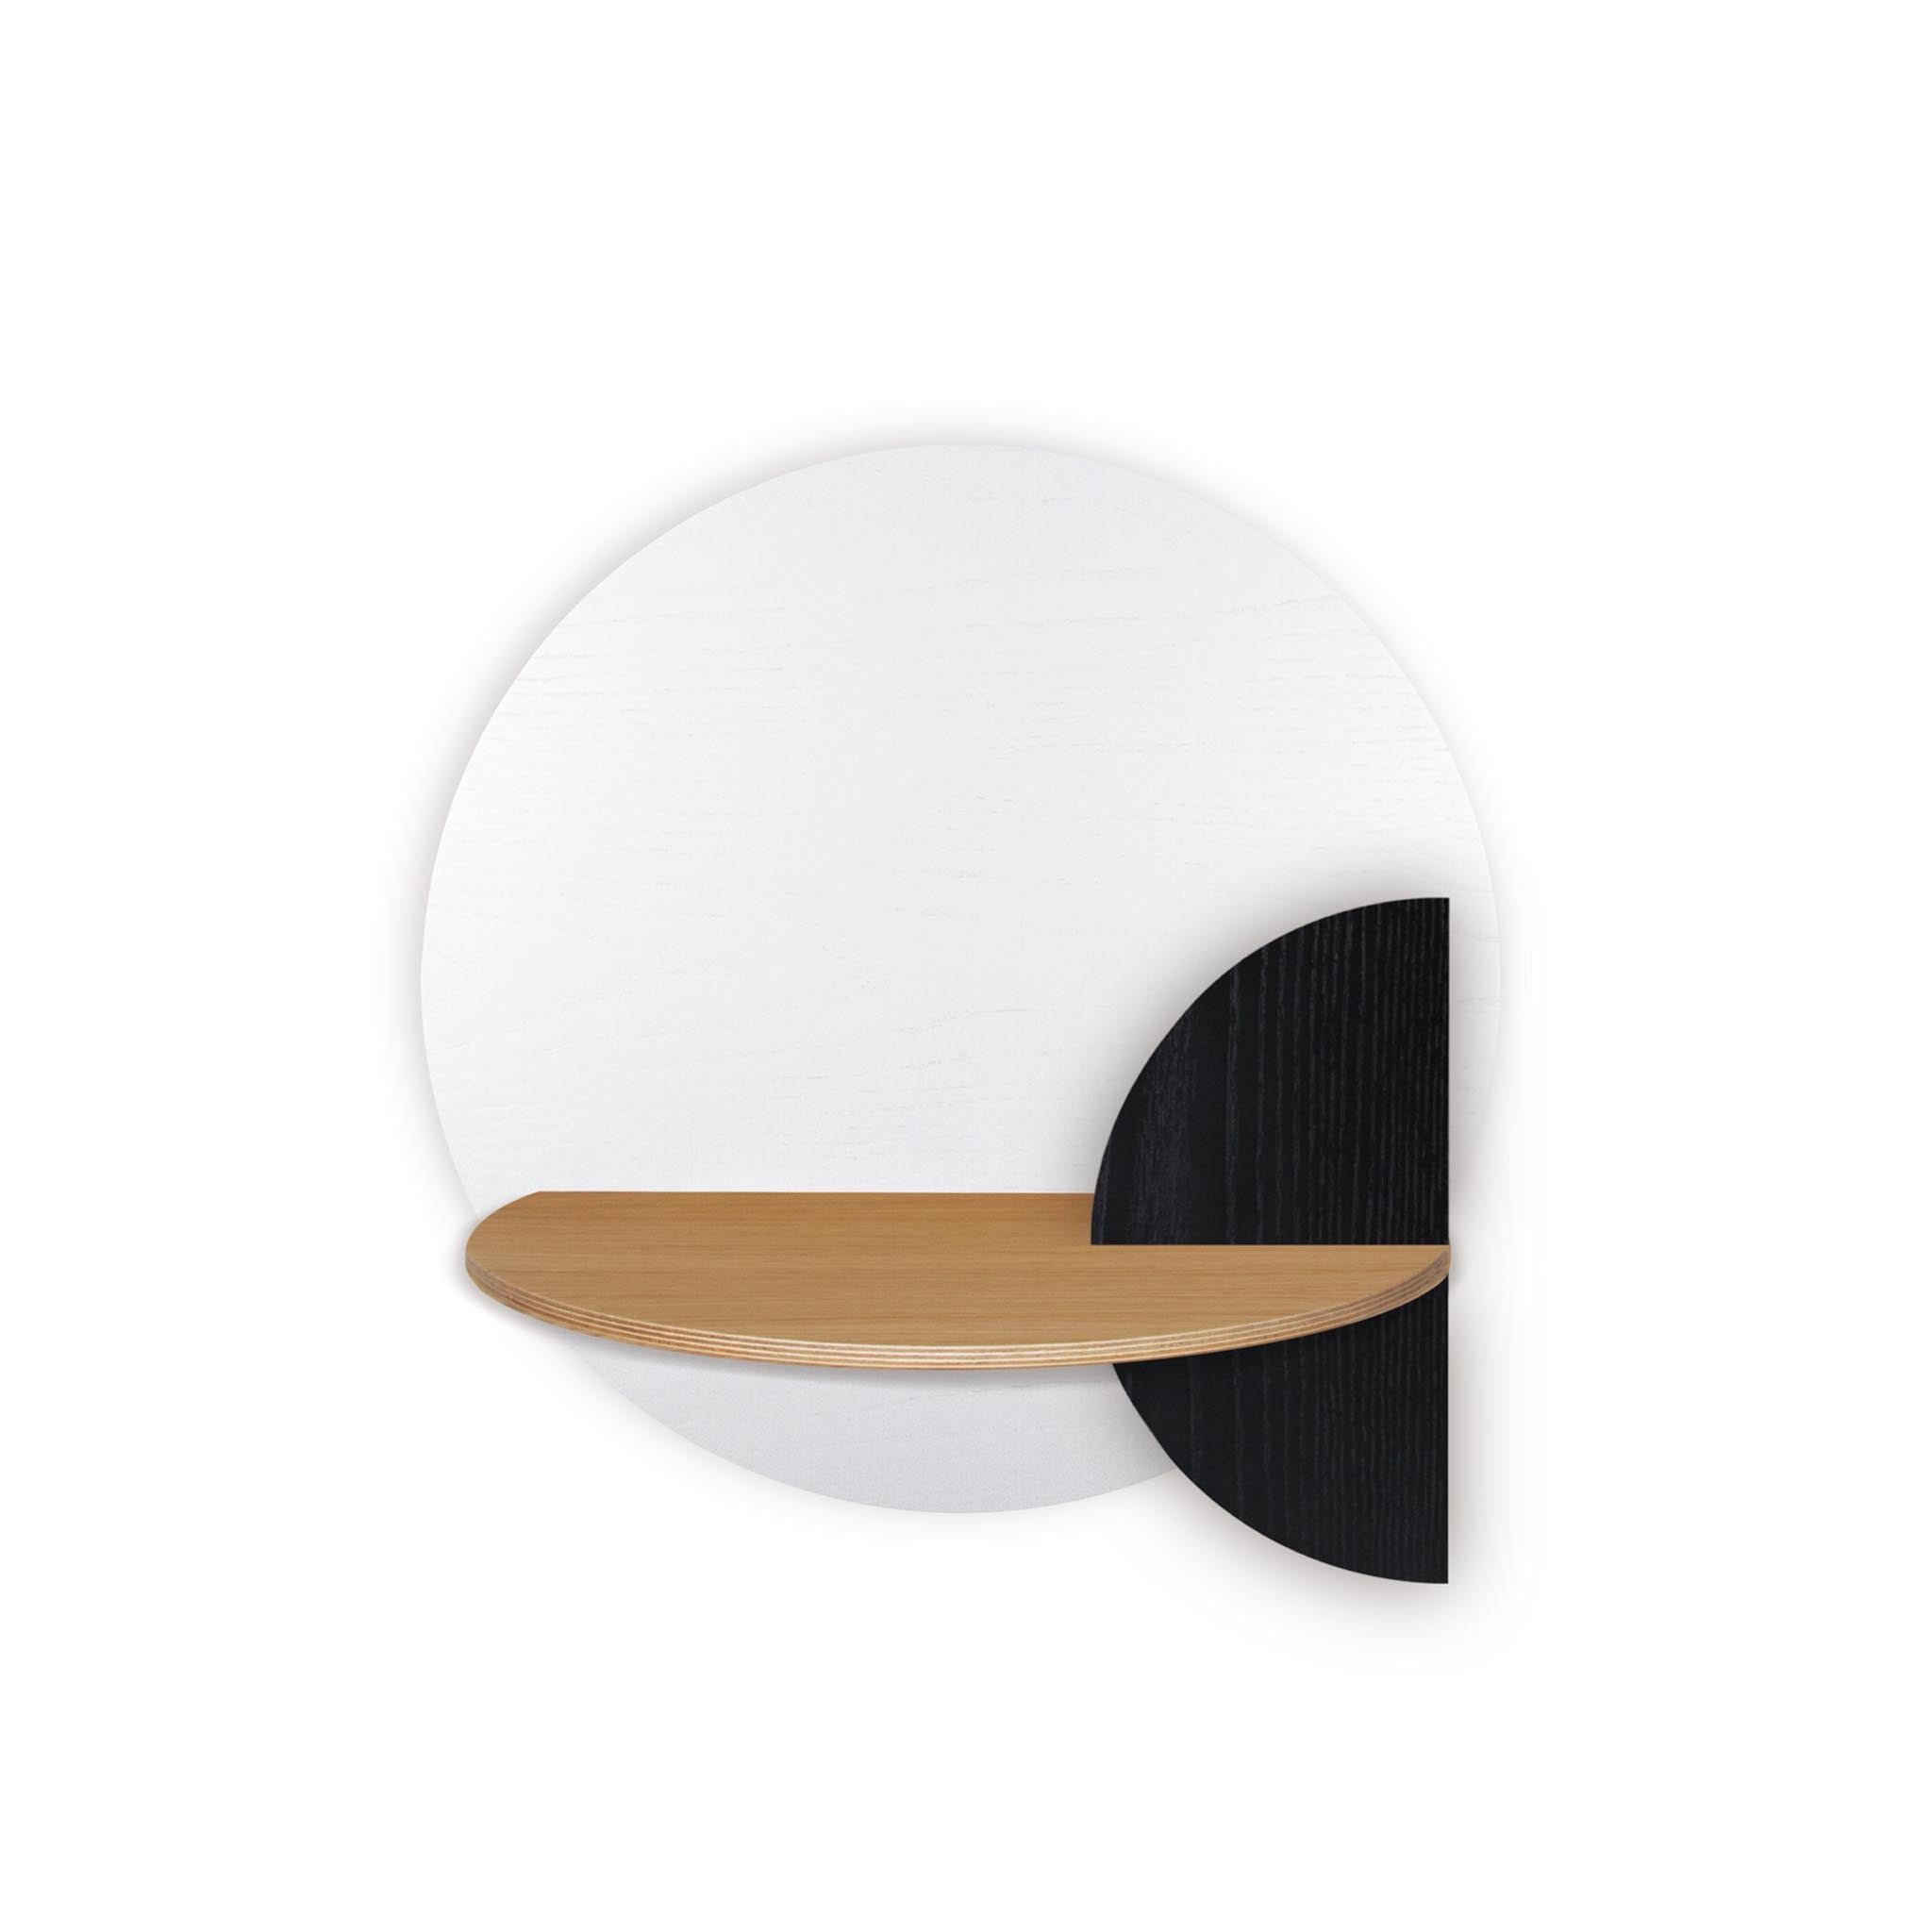 Alba floating nightstand DUO · White circle